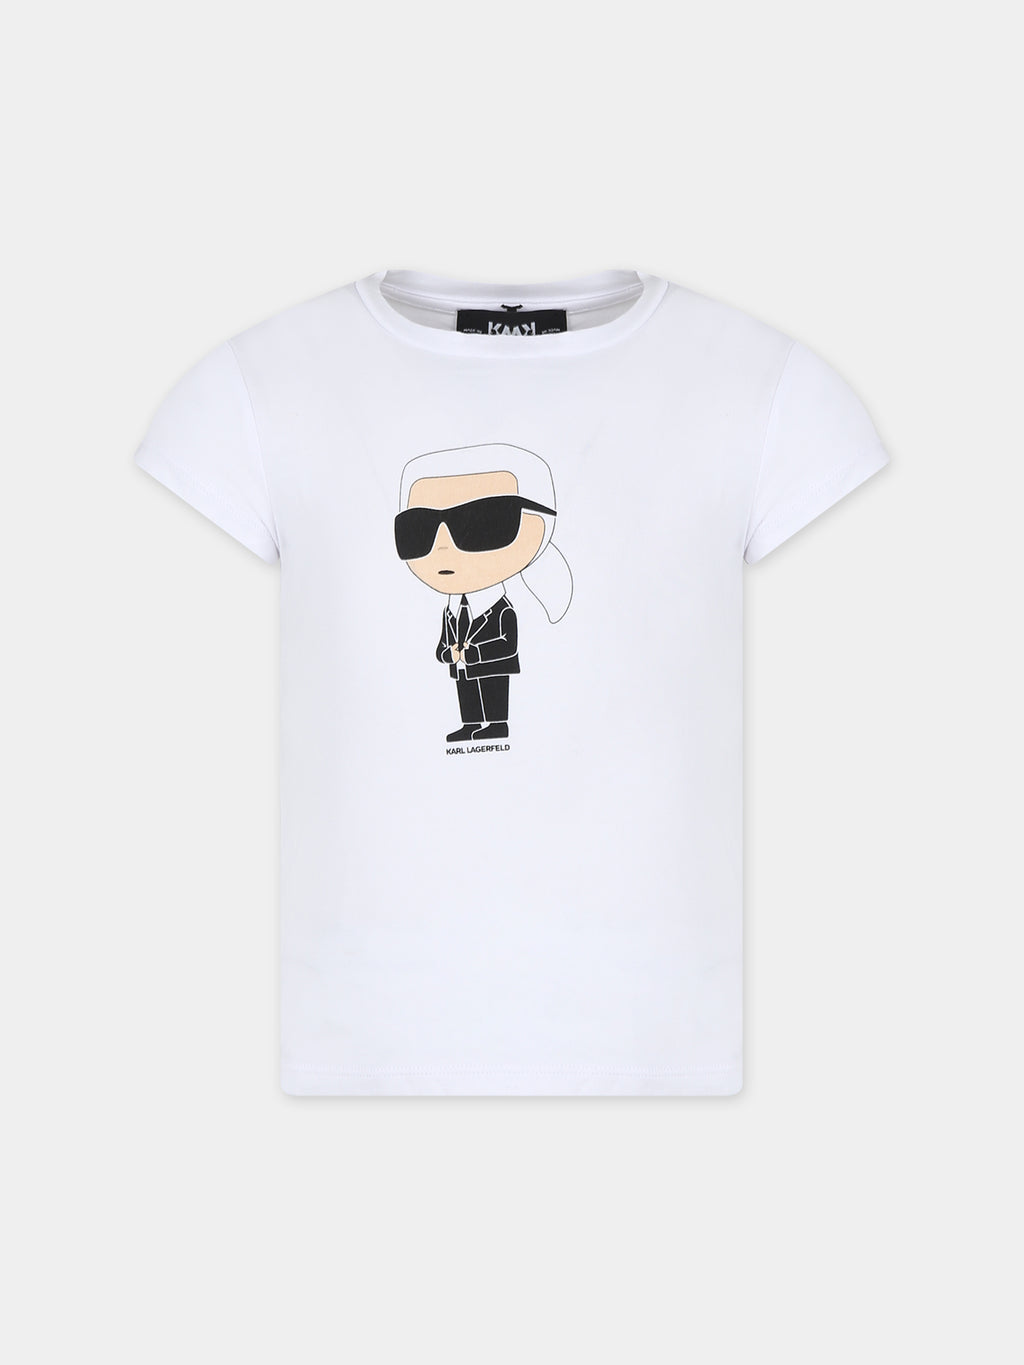 T-shirt blanc pour fille avec imprimé Karl Lagerfeld et logo